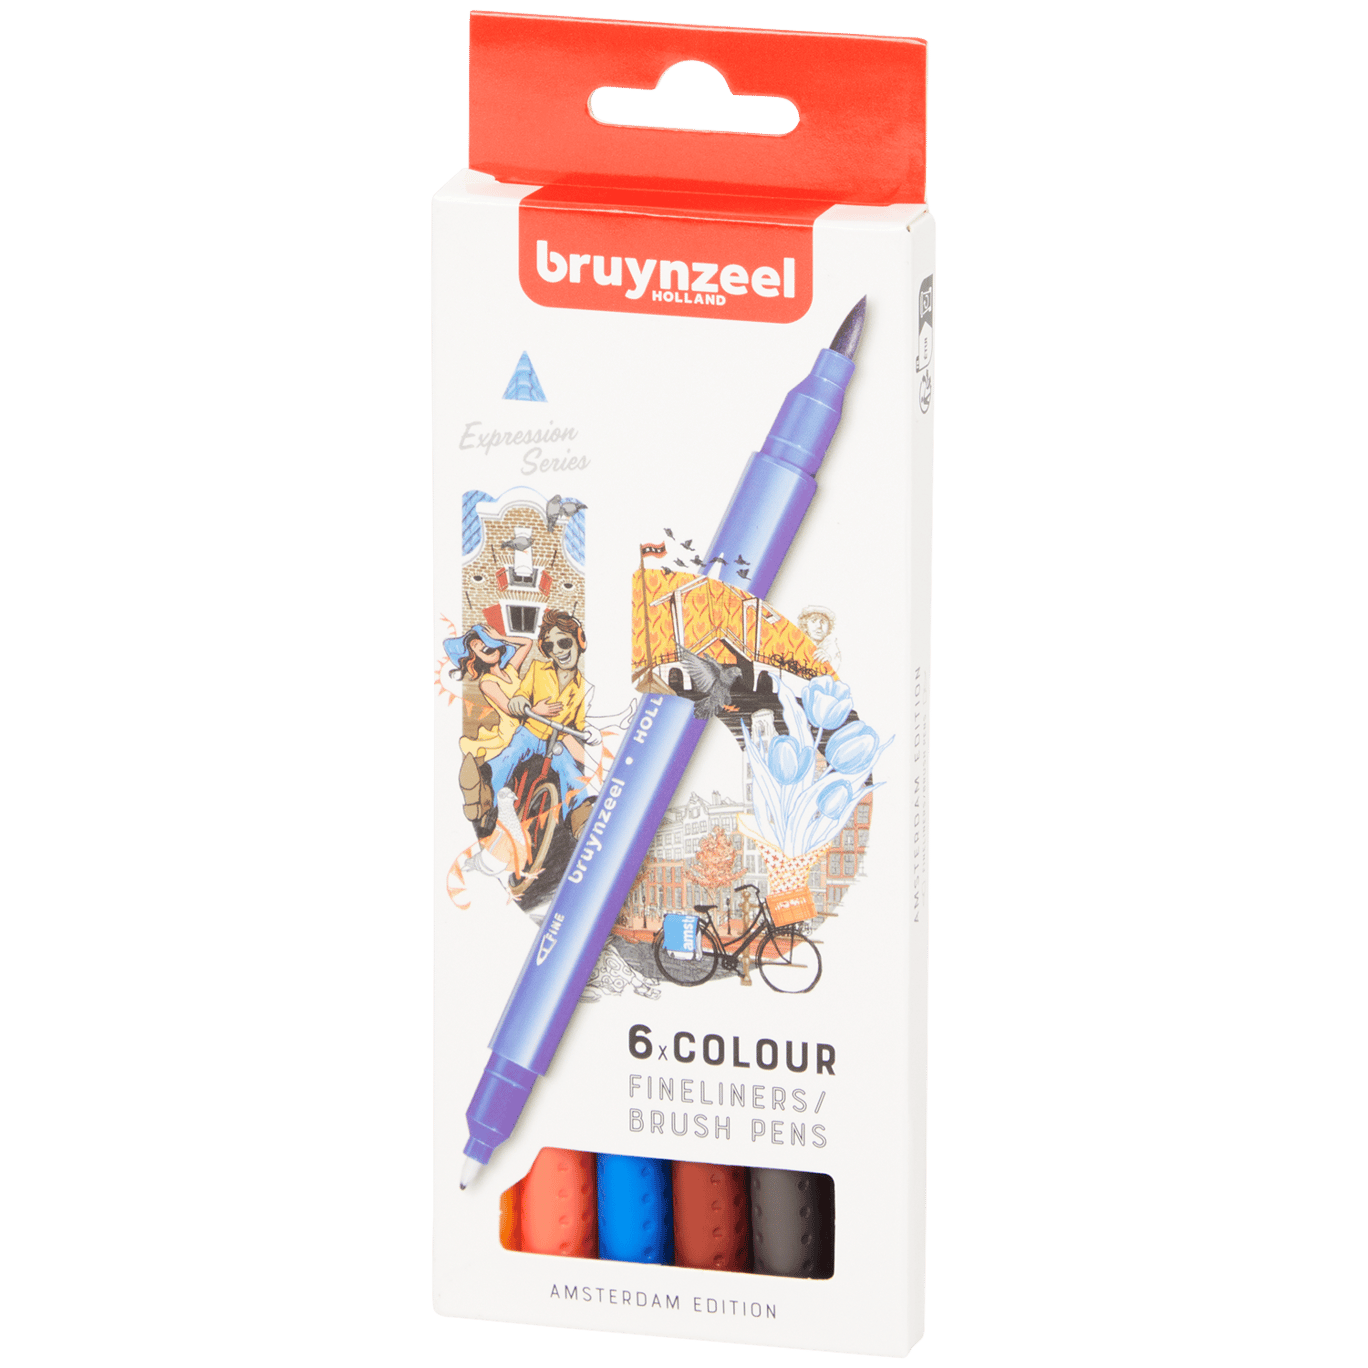 Uitwisseling galblaas Slagschip Bruynzeel fineliners/brush pennen | Action.com